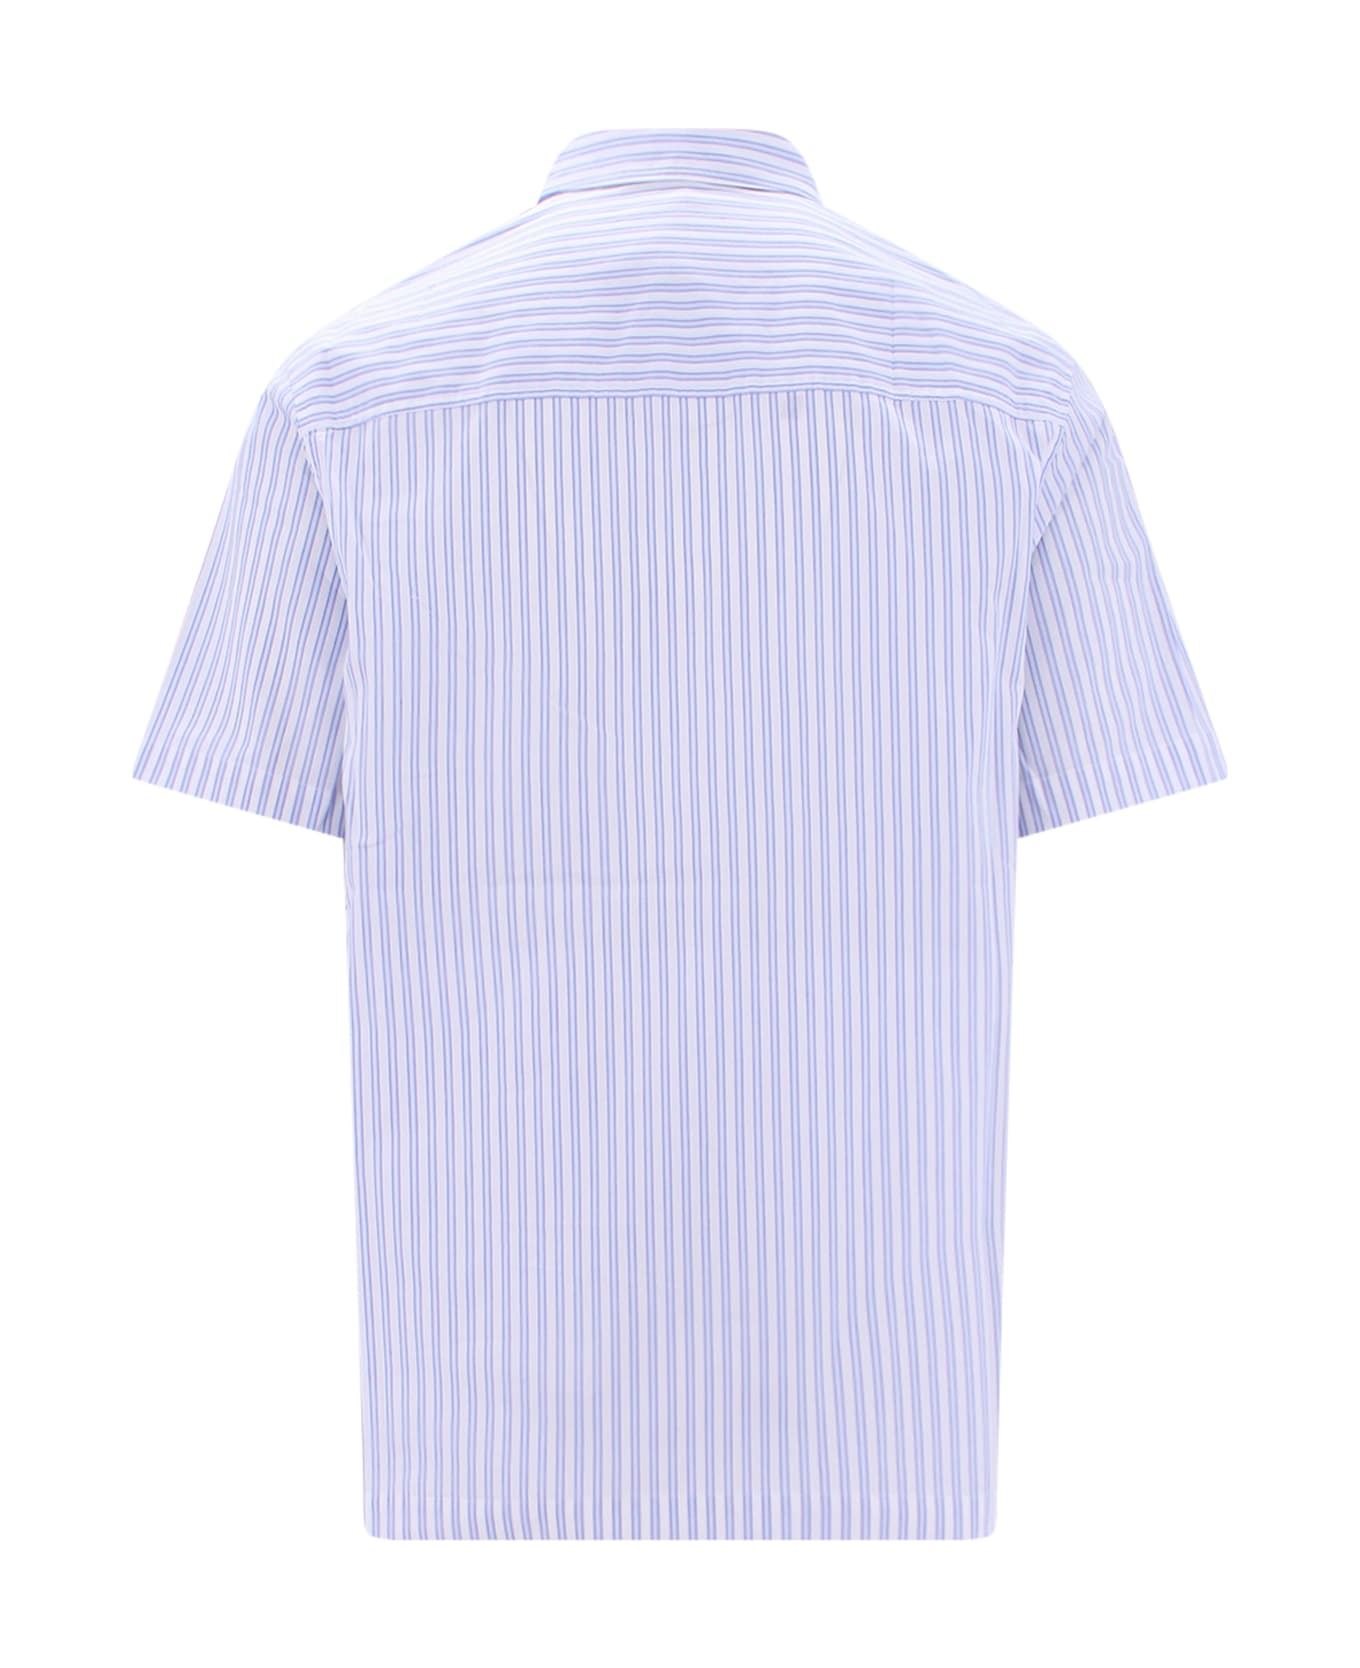 Nanushka Adam Shirt - White シャツ